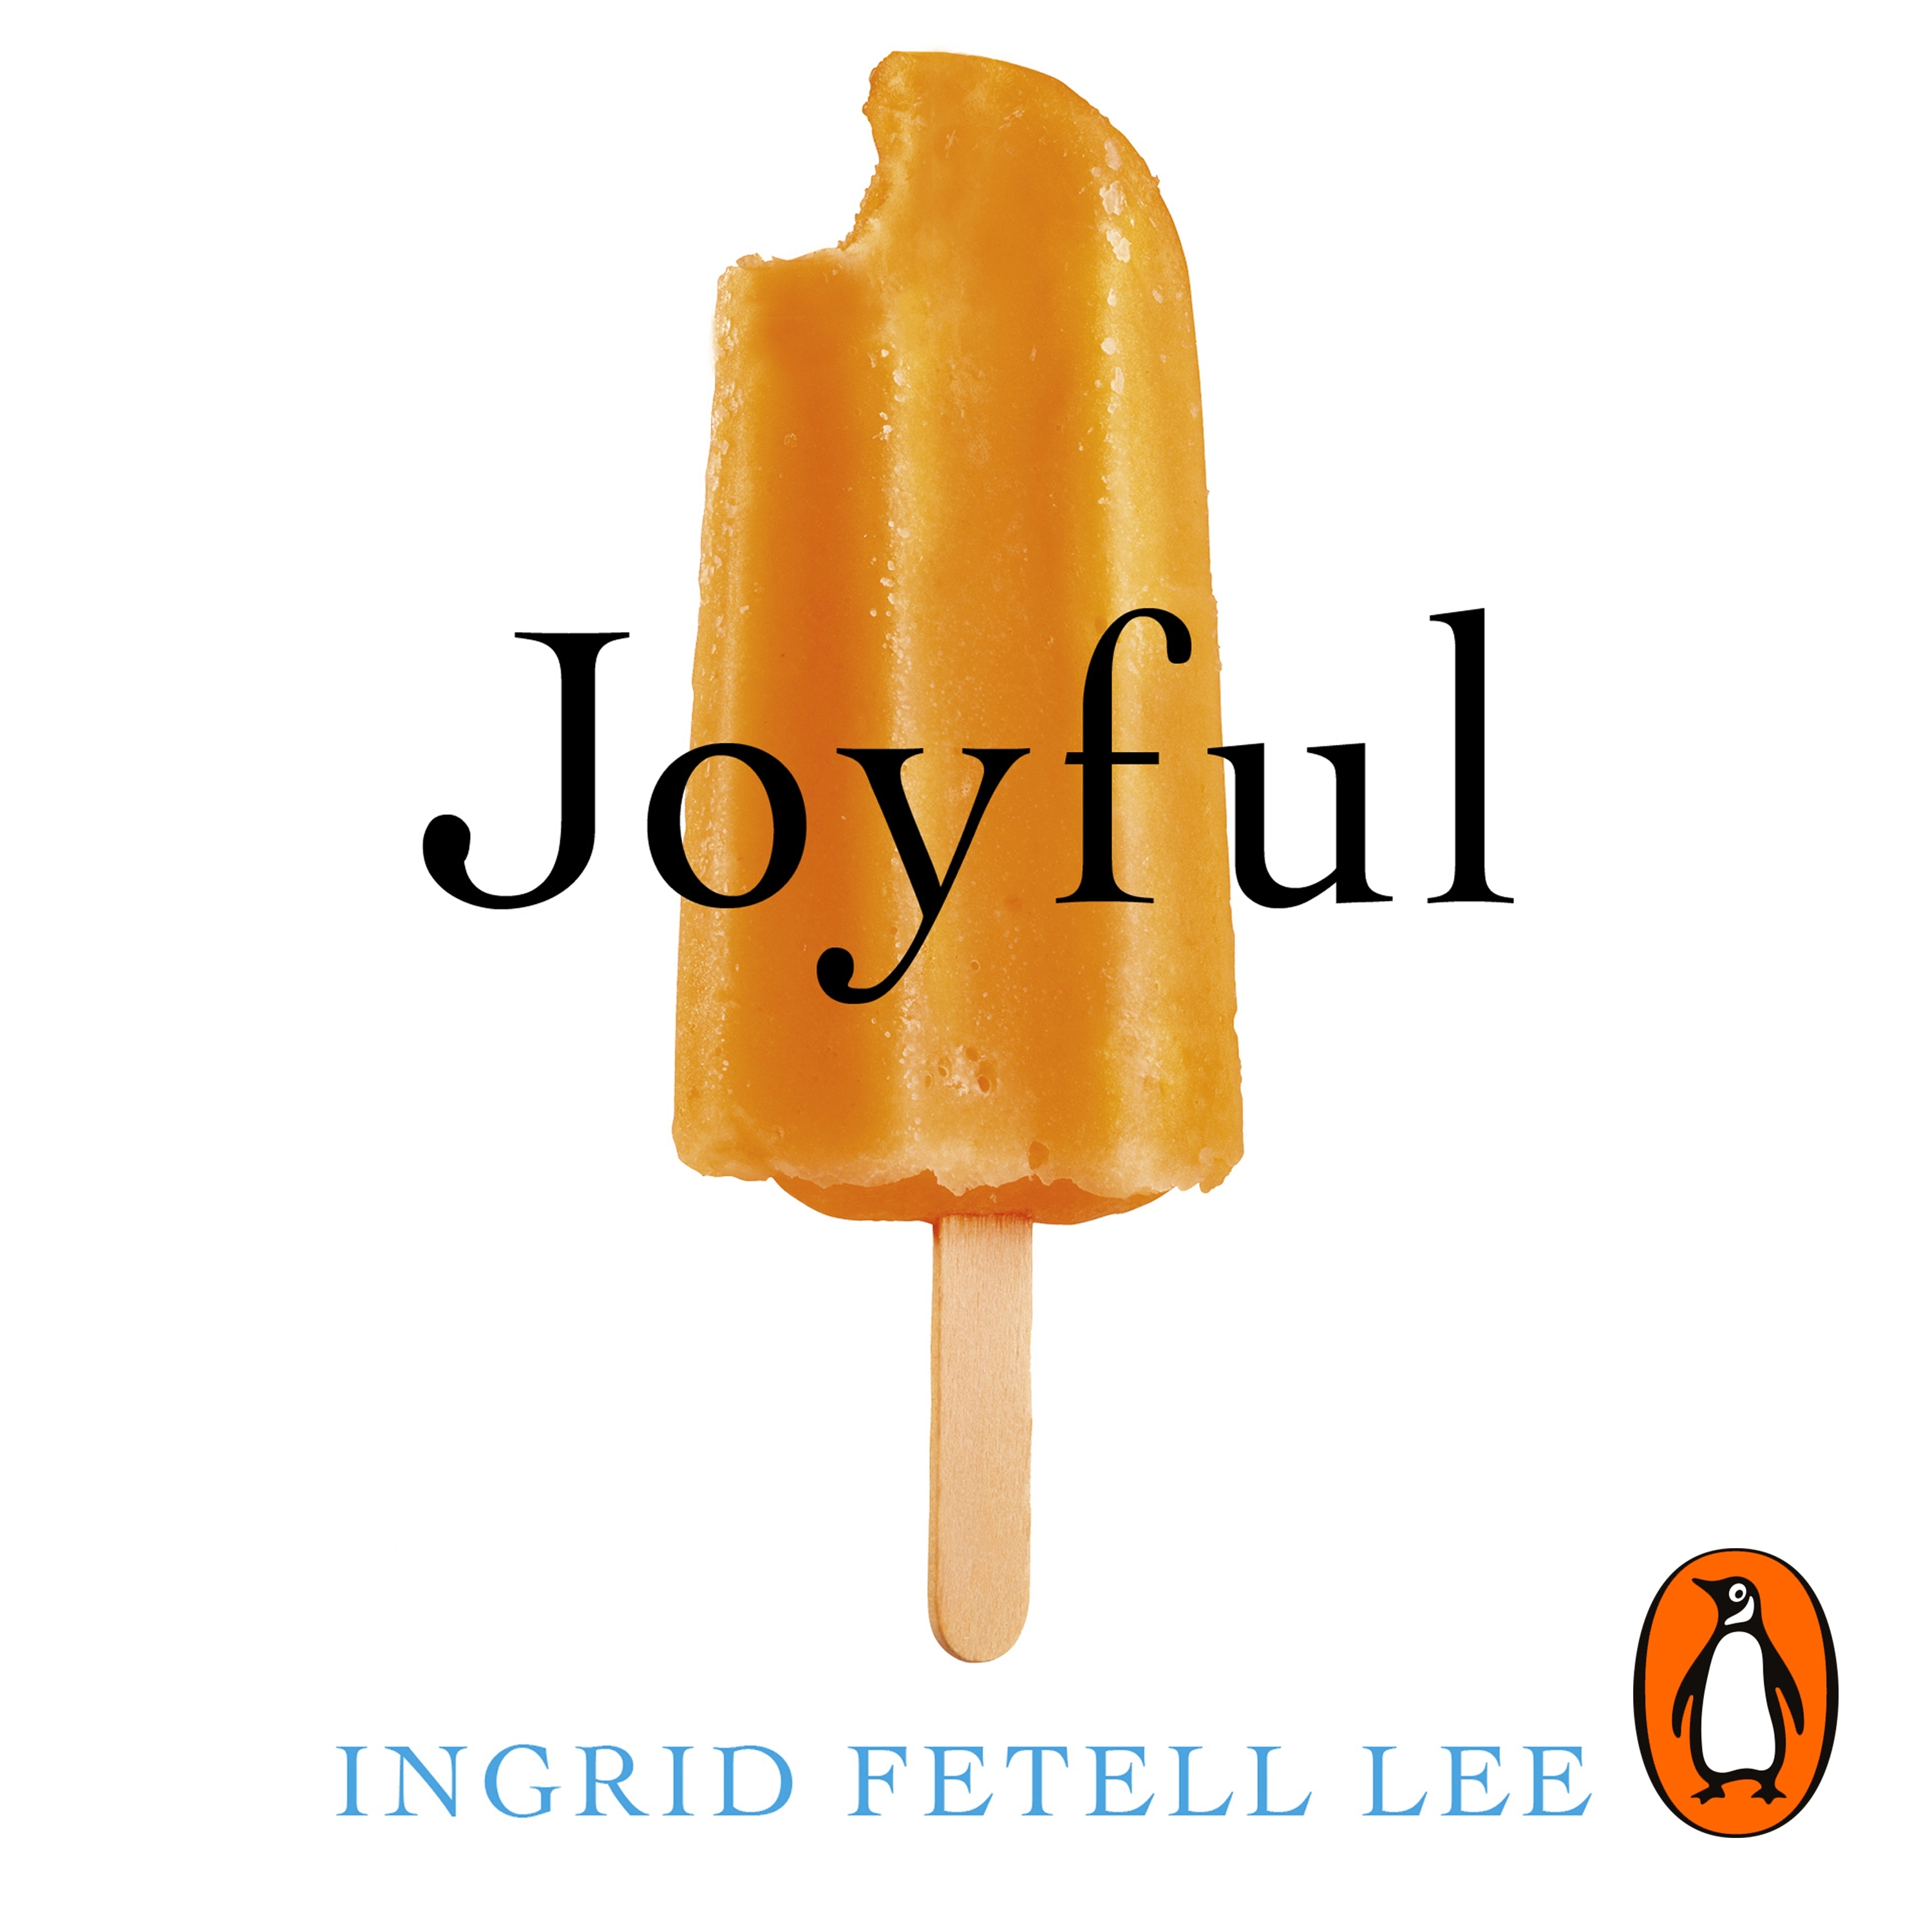 book joyful by ingrid fetell lee